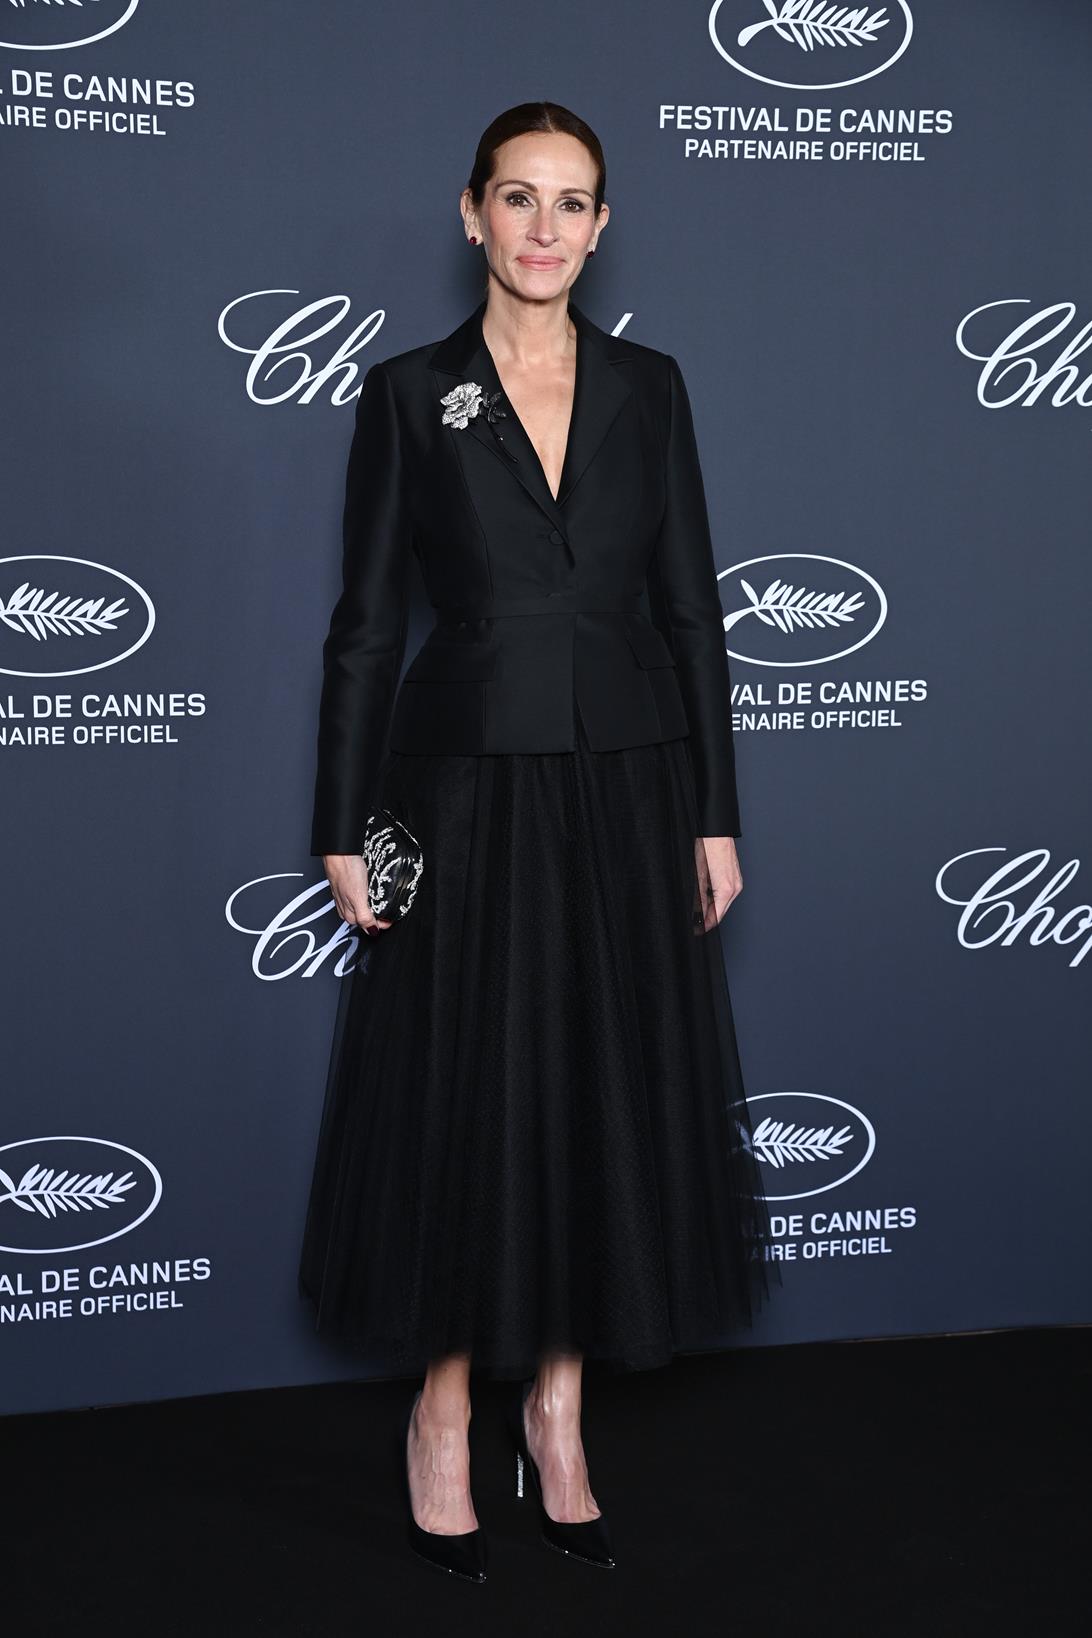 Julia Roberts: madrina del premio Chopard 2022 en el Festival de Cannes